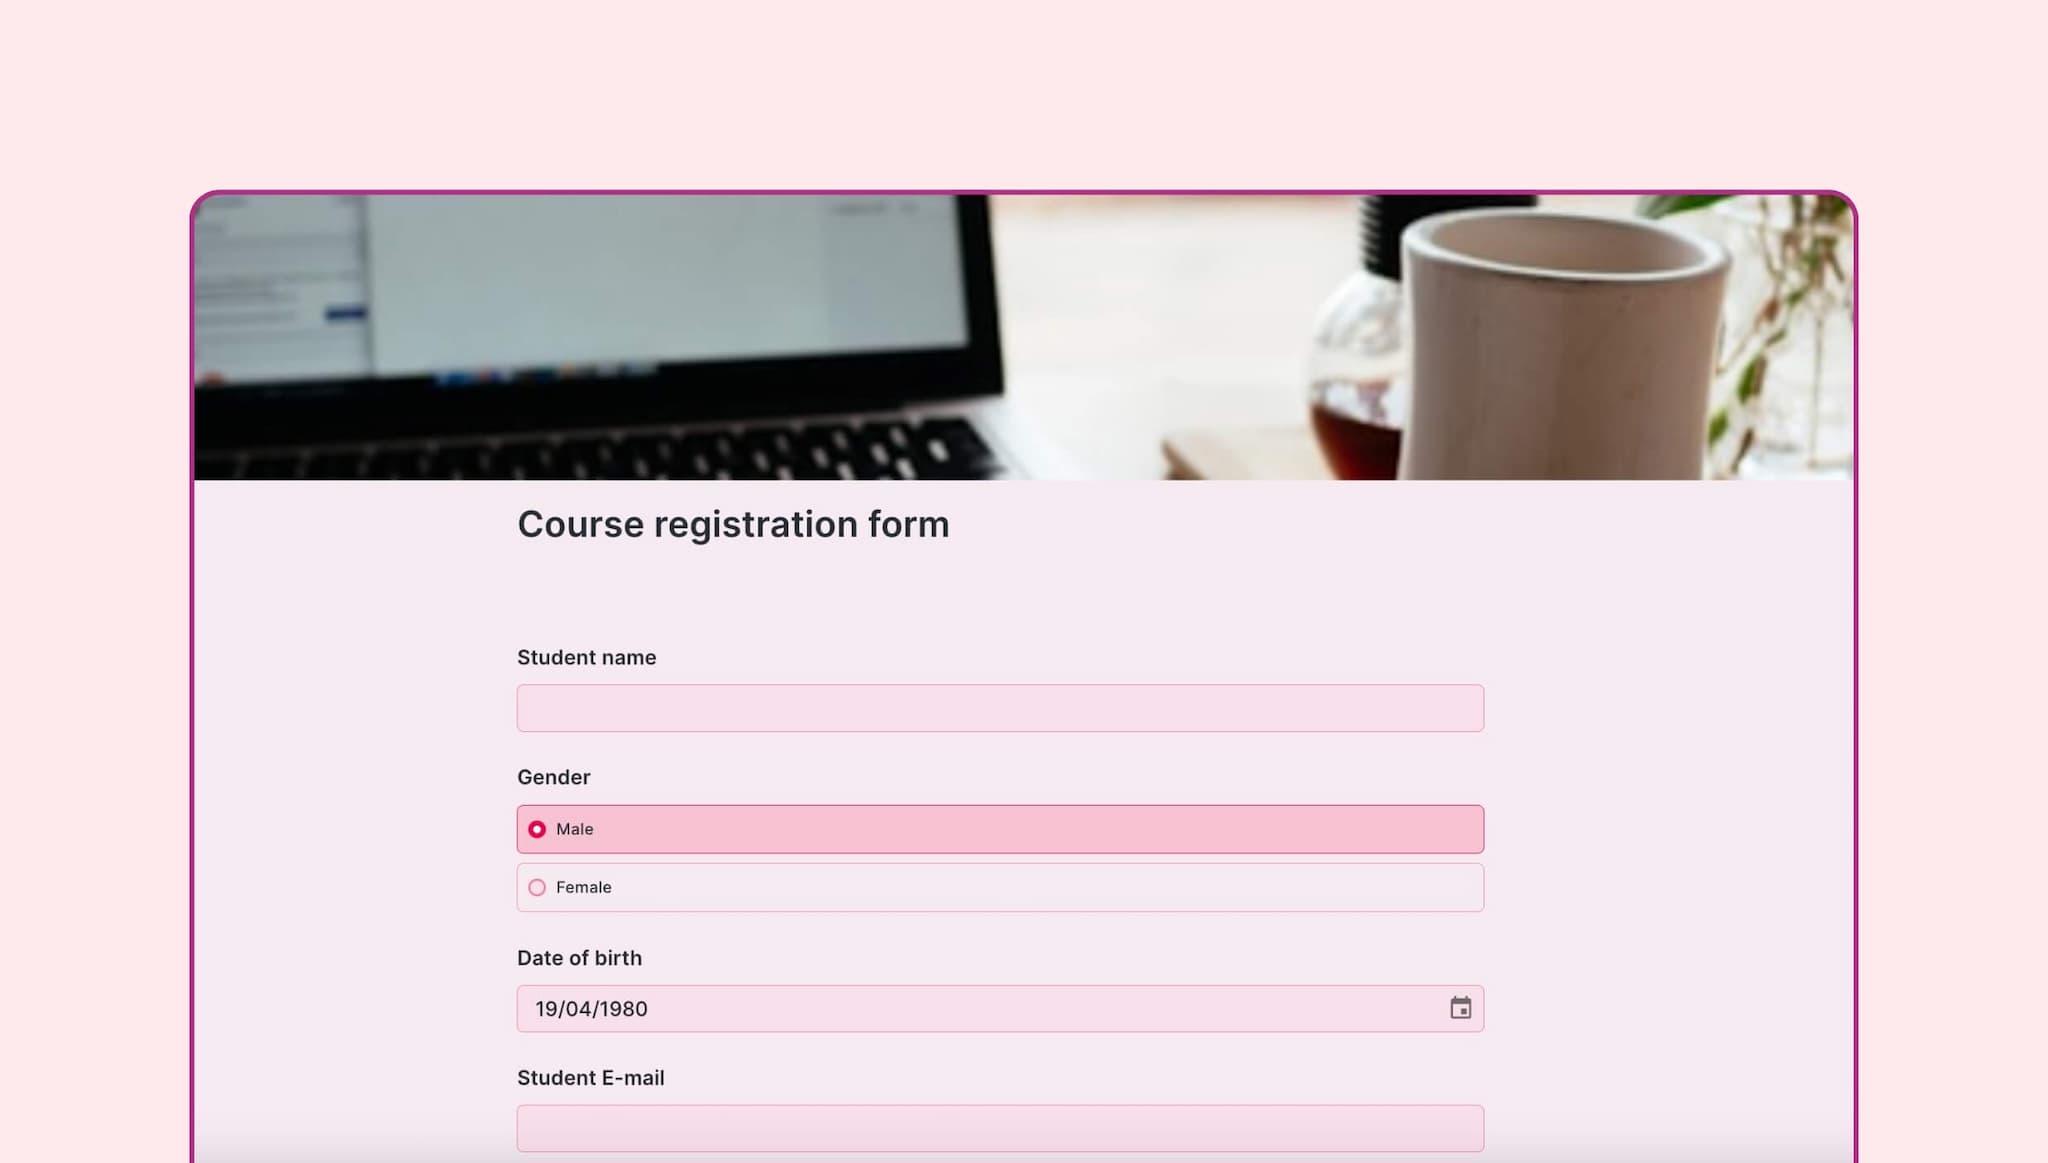 Course registration form